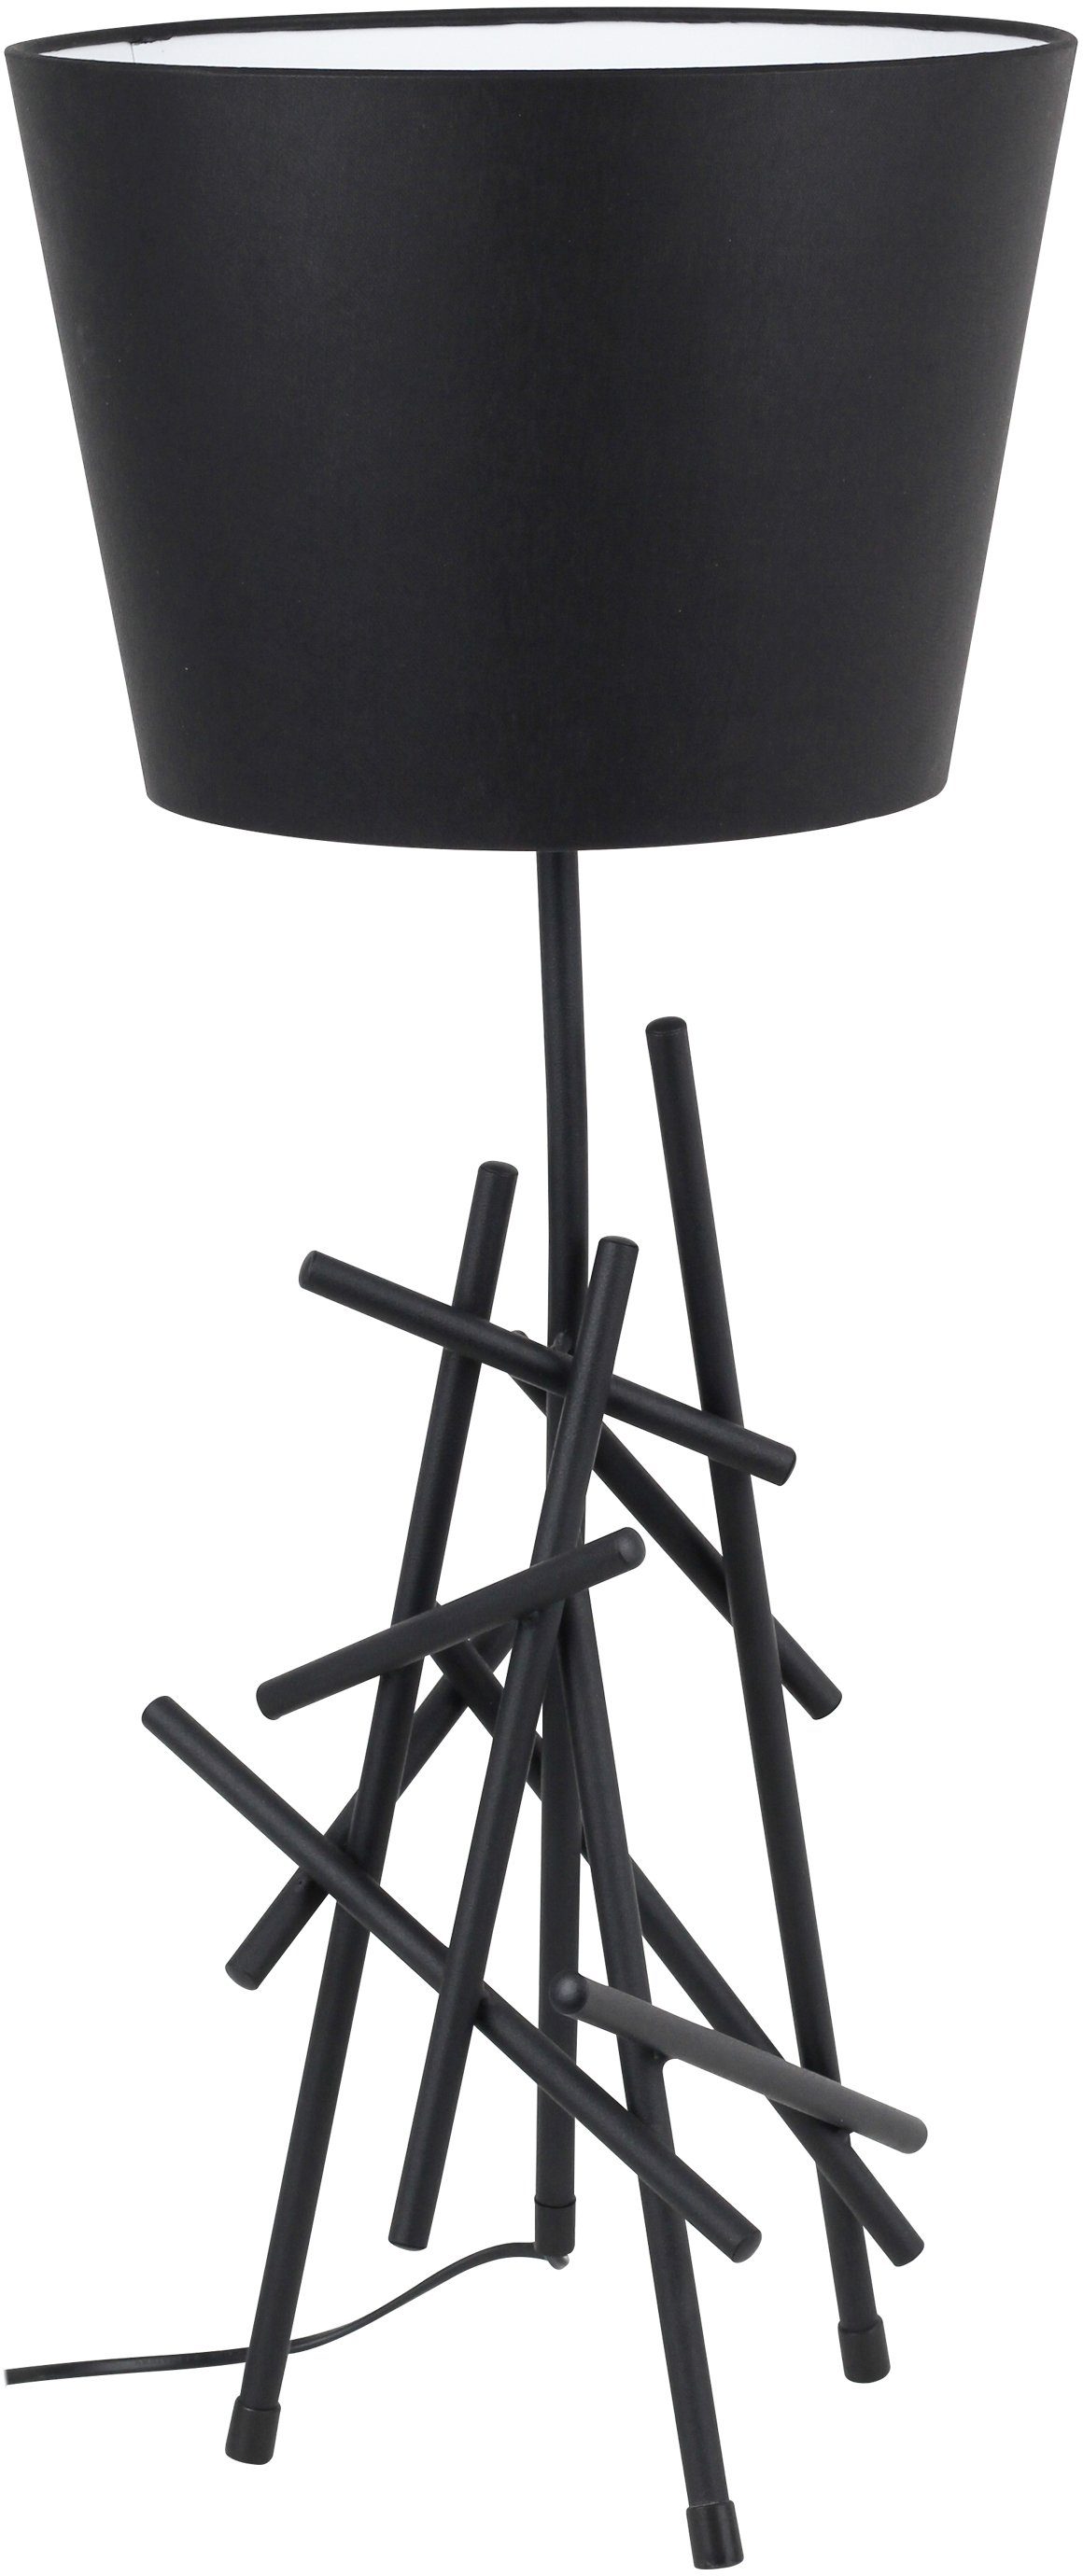 spot light tafellamp glenn van metaal, met flexibele stoffen kap, origineel design zwart